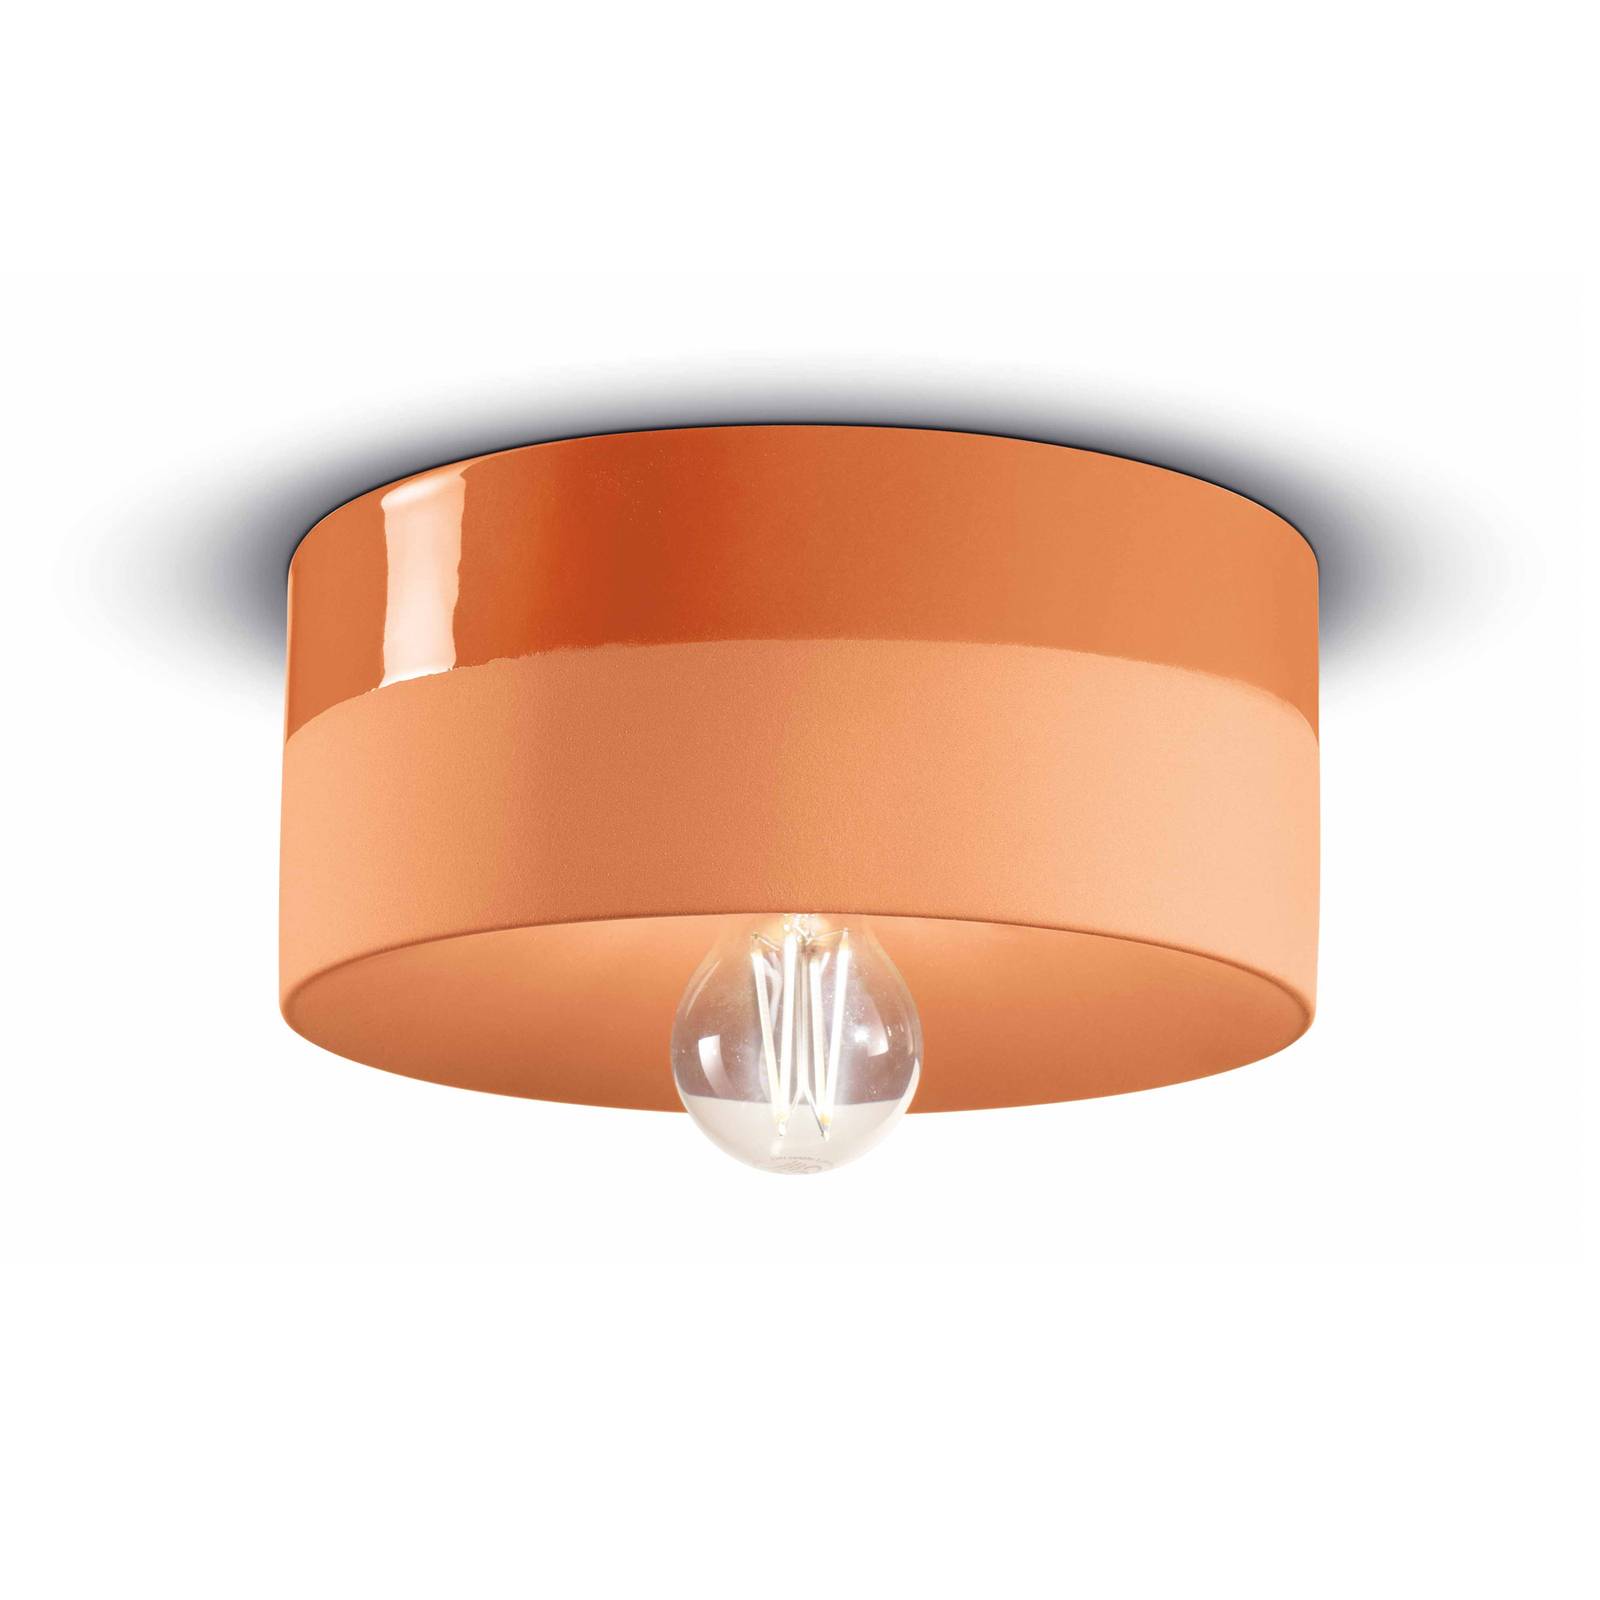 Deckenlampe PI Keramik glänzend/matt Ø 25cm orange von Ferroluce